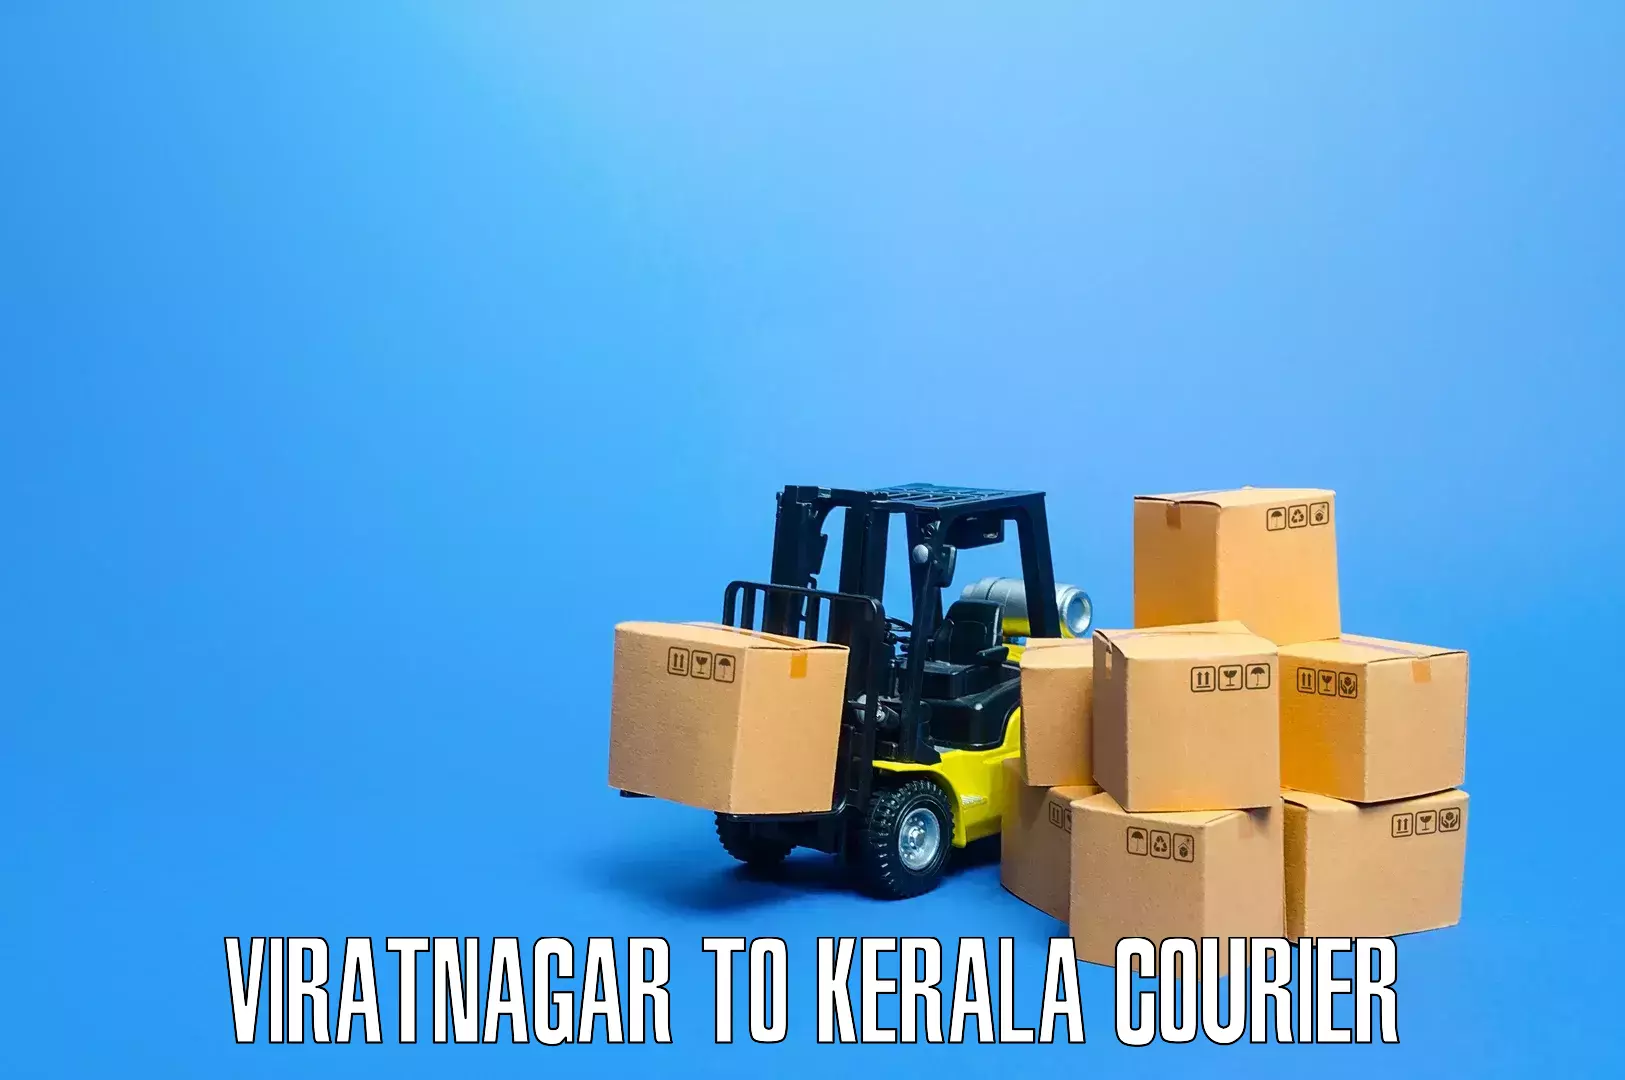 Moving and packing experts Viratnagar to Chiramanangad